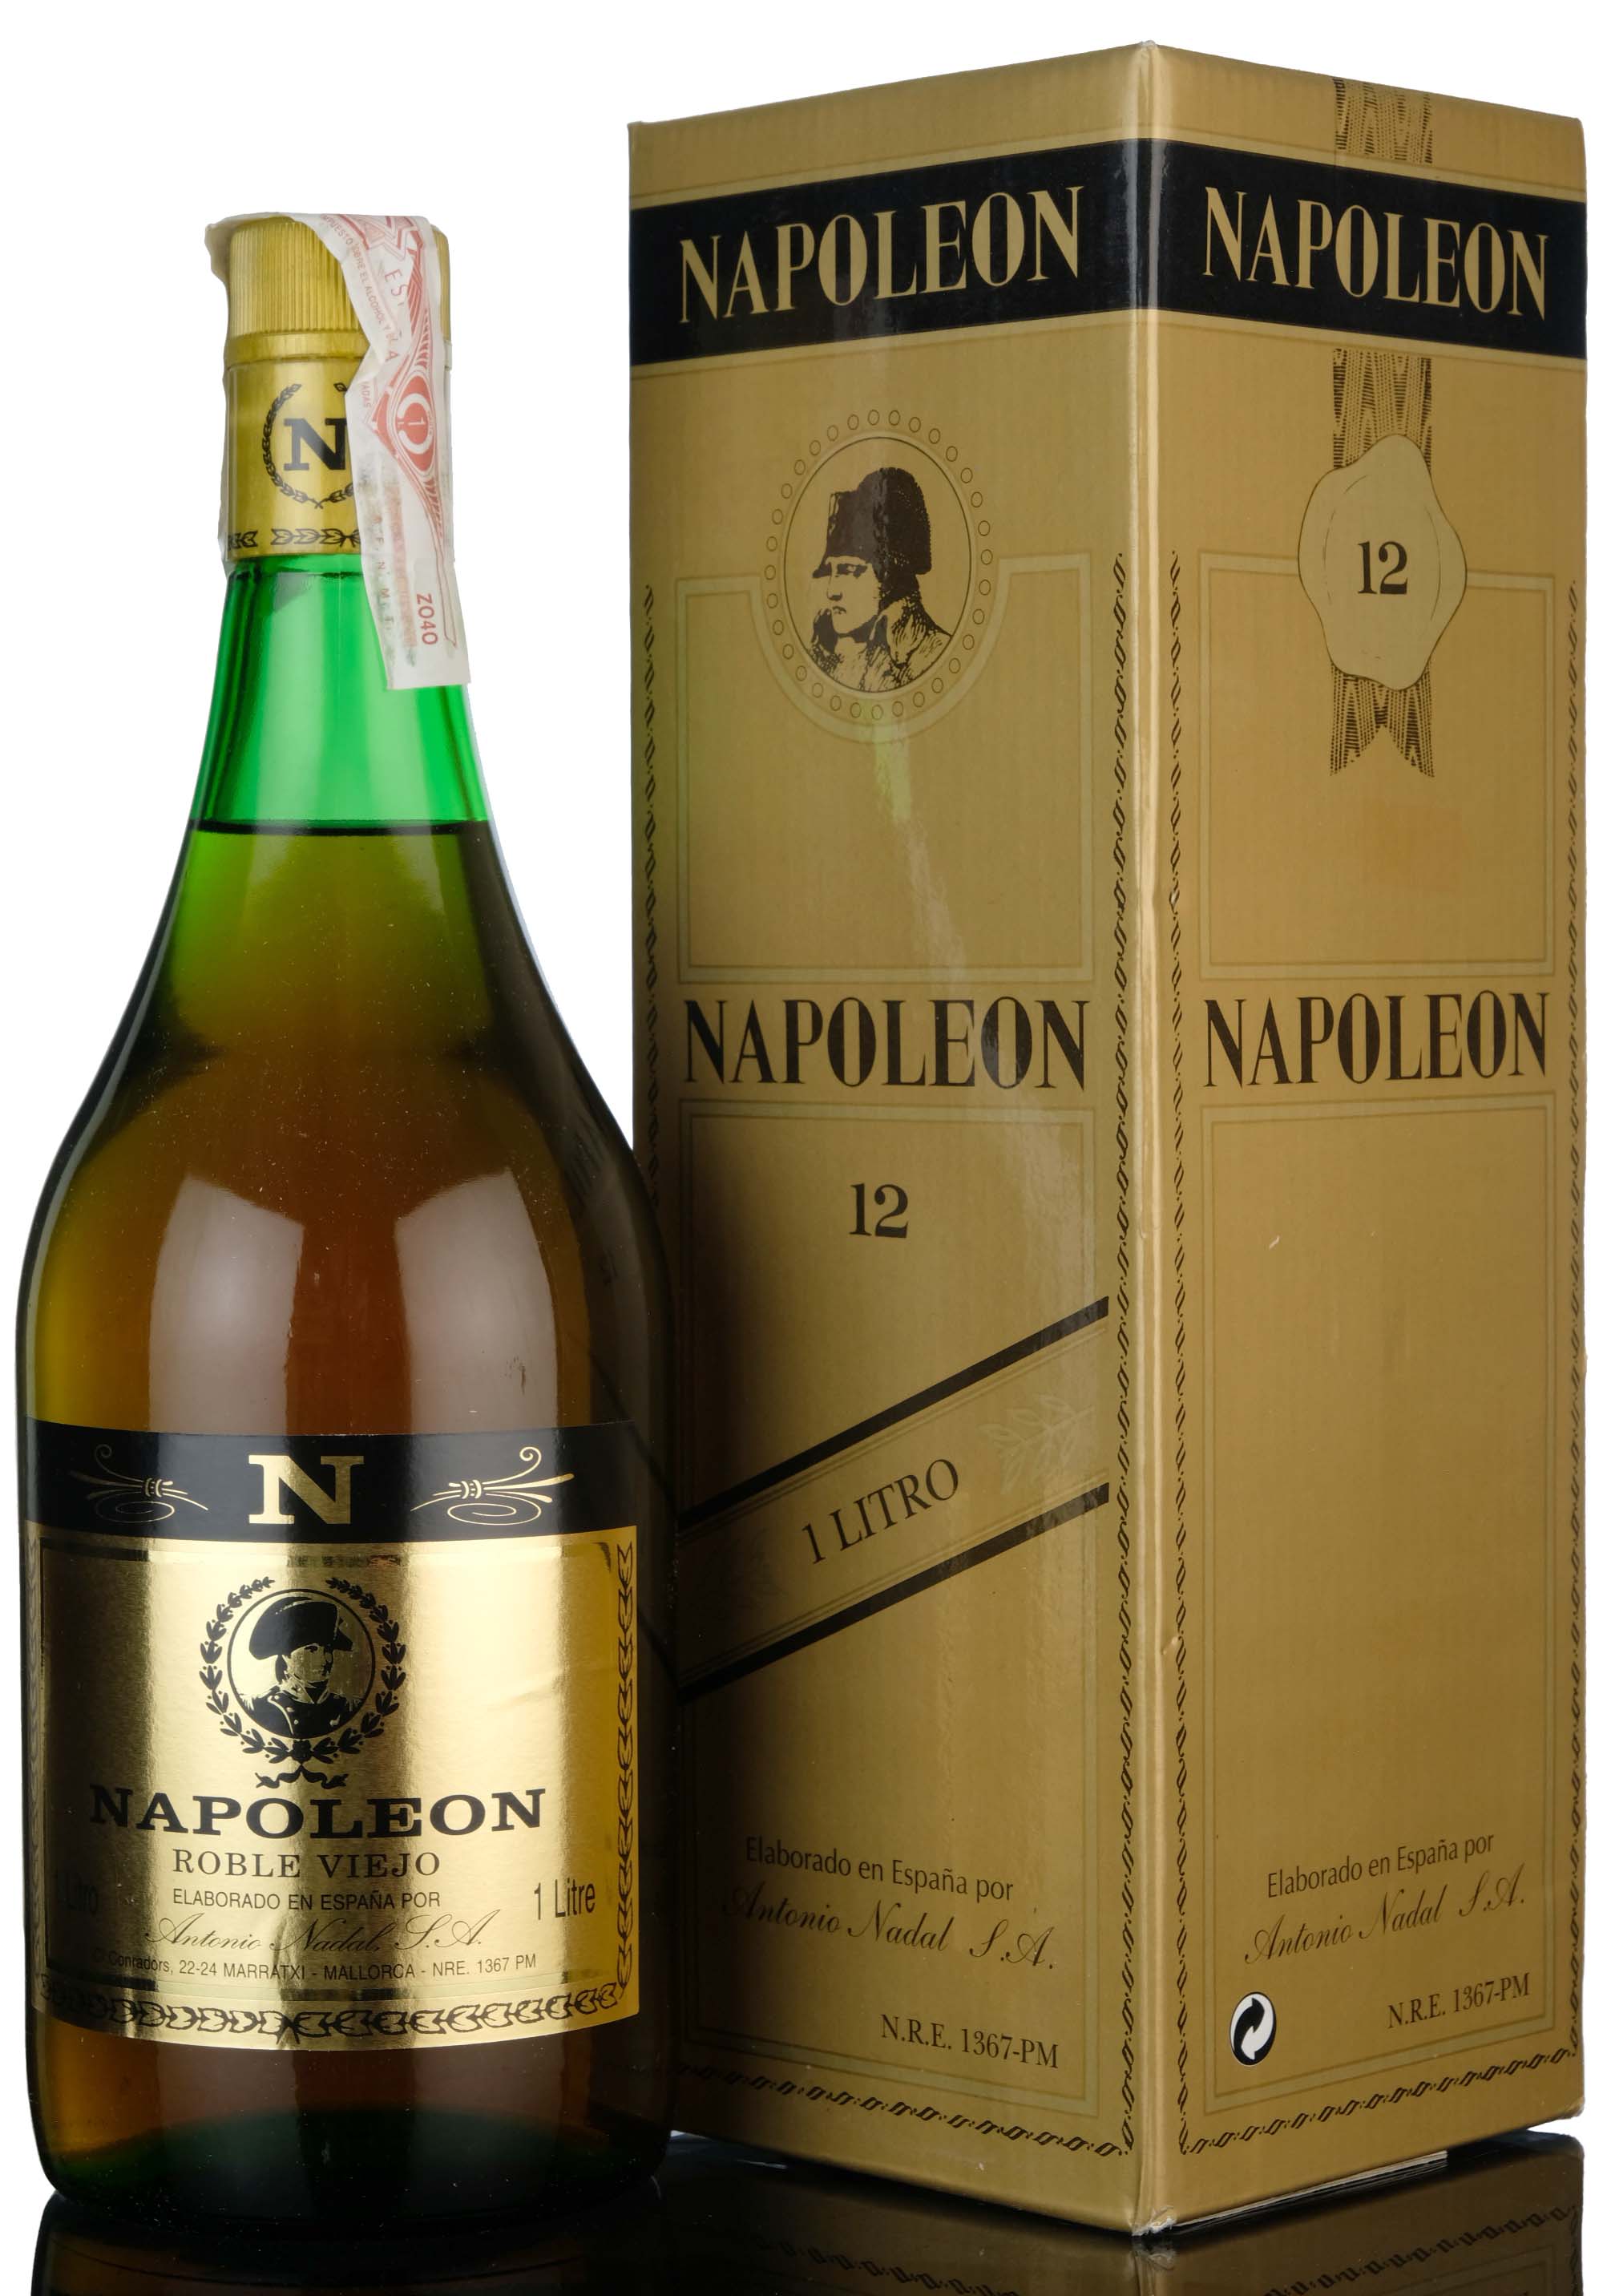 Napoleon Roble Viejo Brandy - 1 Litre